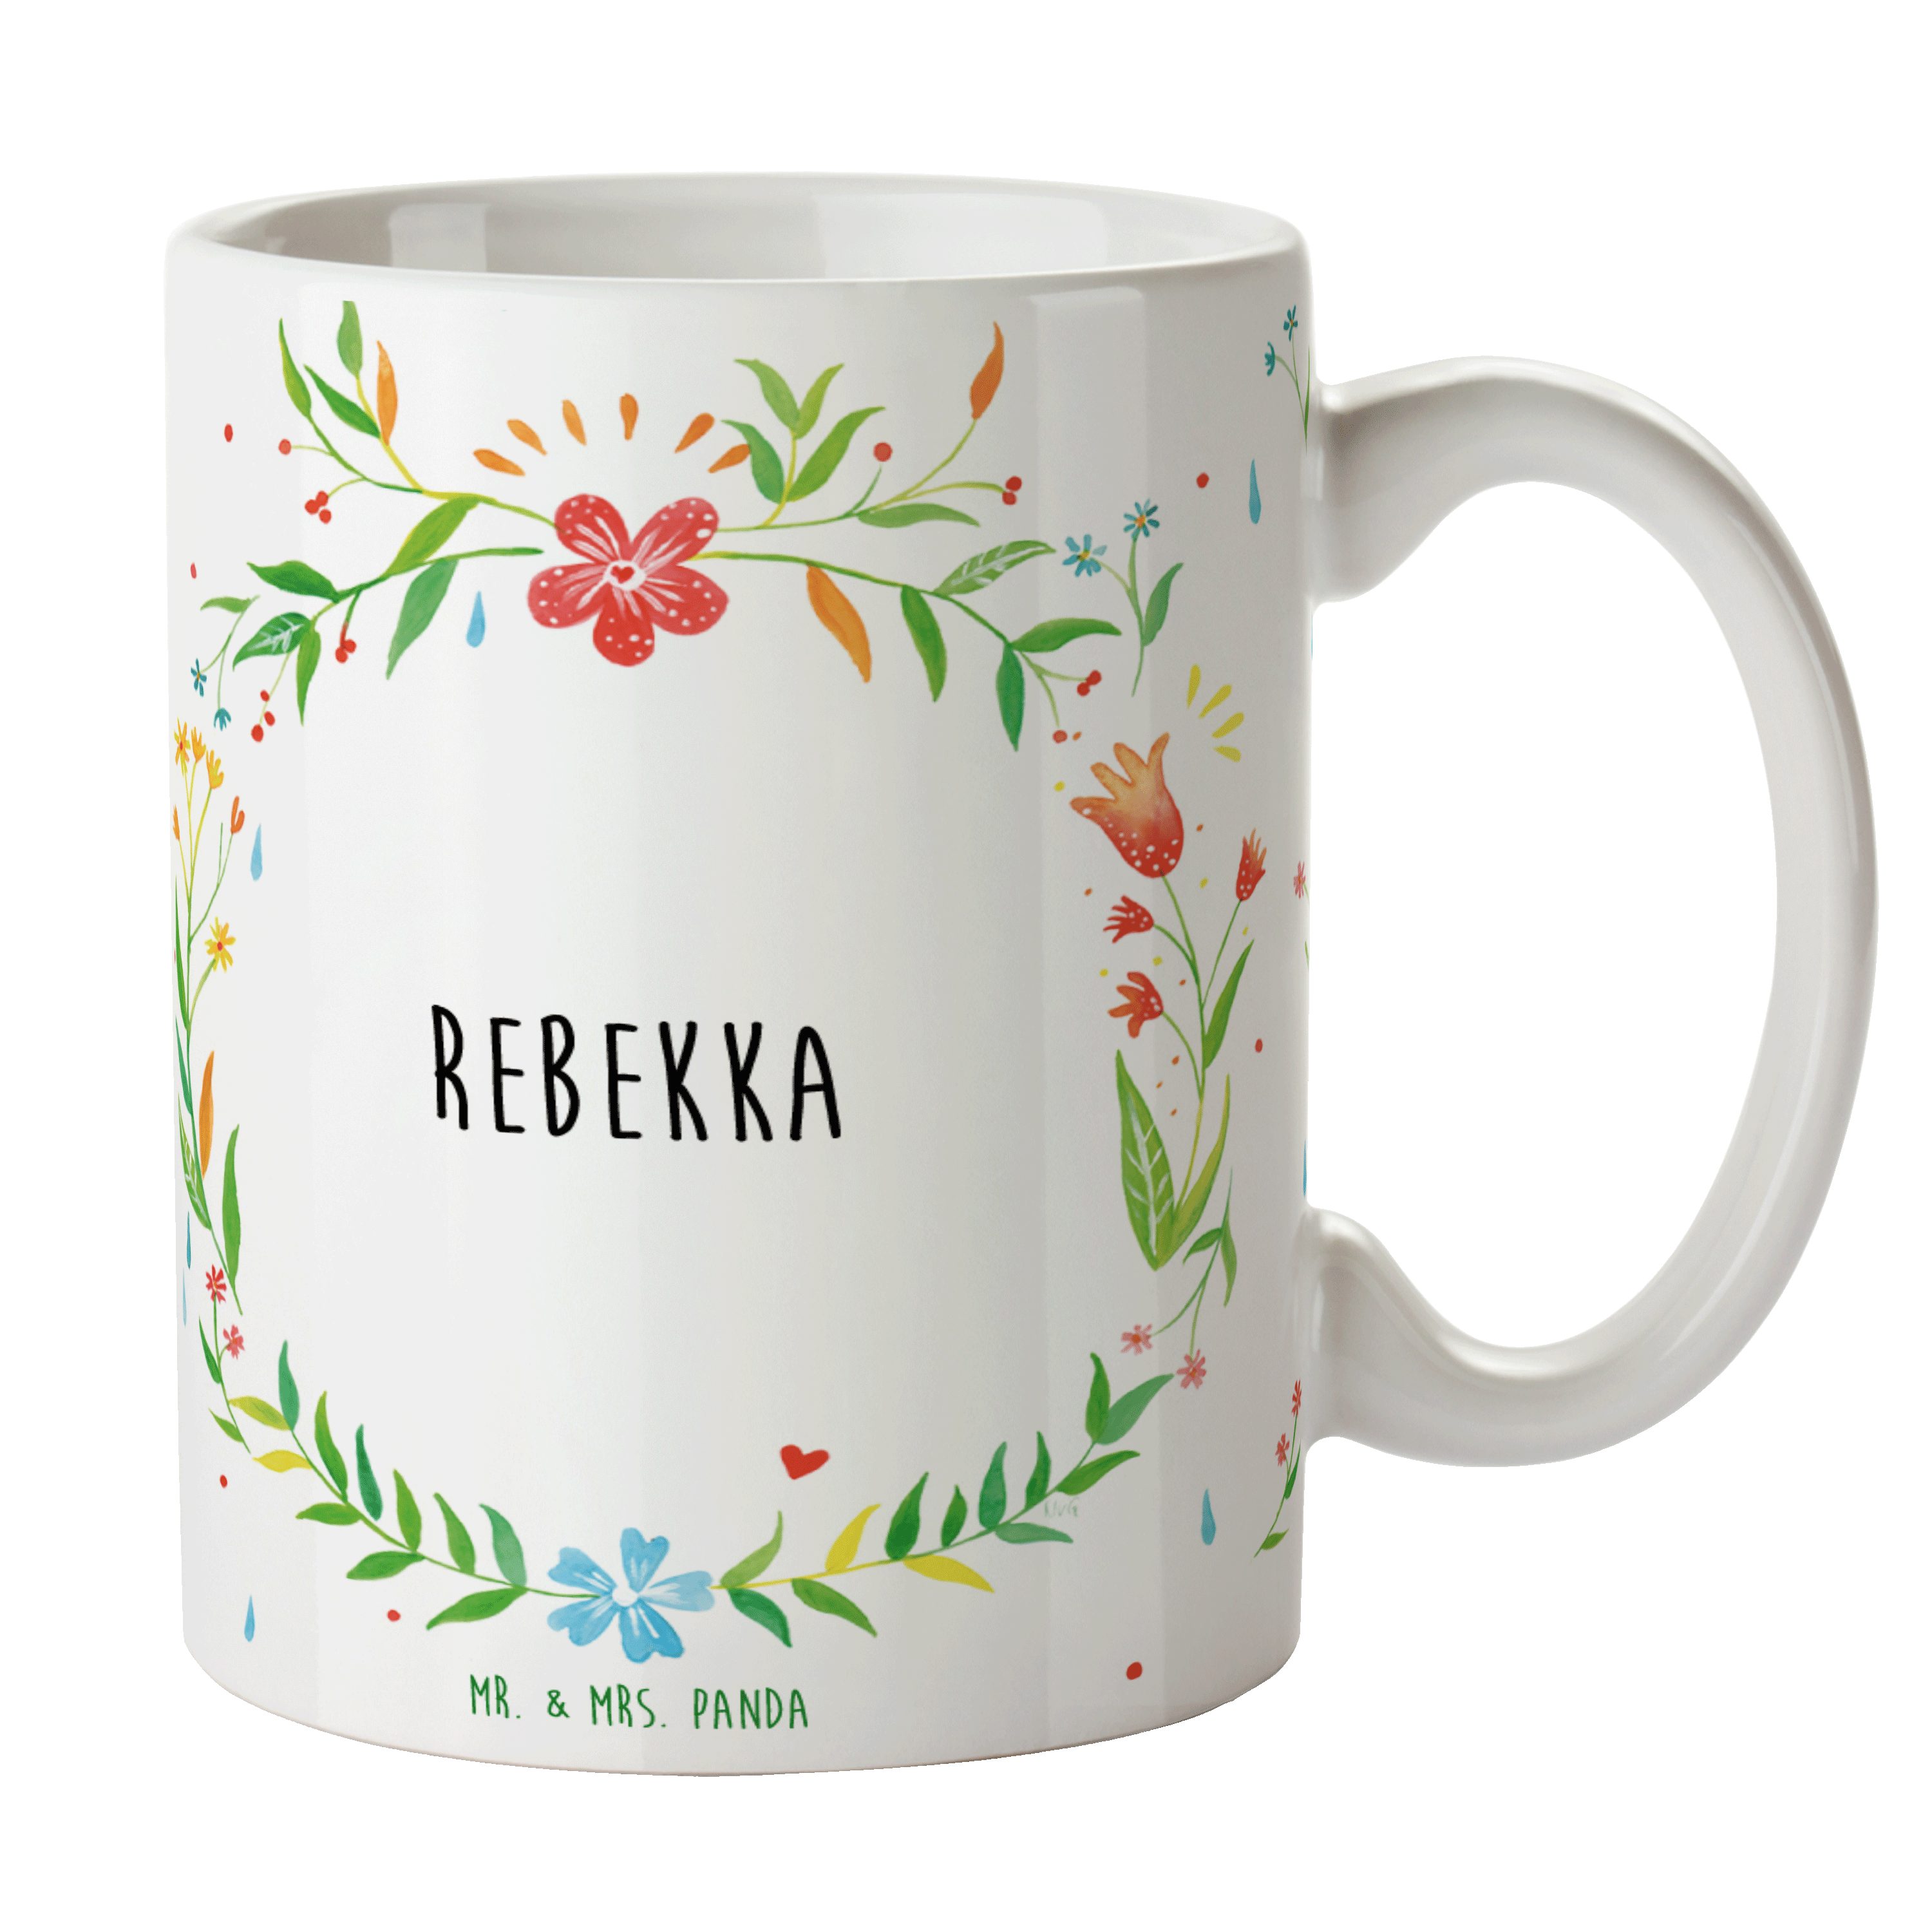 Mr. & Mrs. Panda Tasse Rebekka - Geschenk, Kaffeebecher, Kaffeetasse, Büro Tasse, Becher, Ta, Keramik